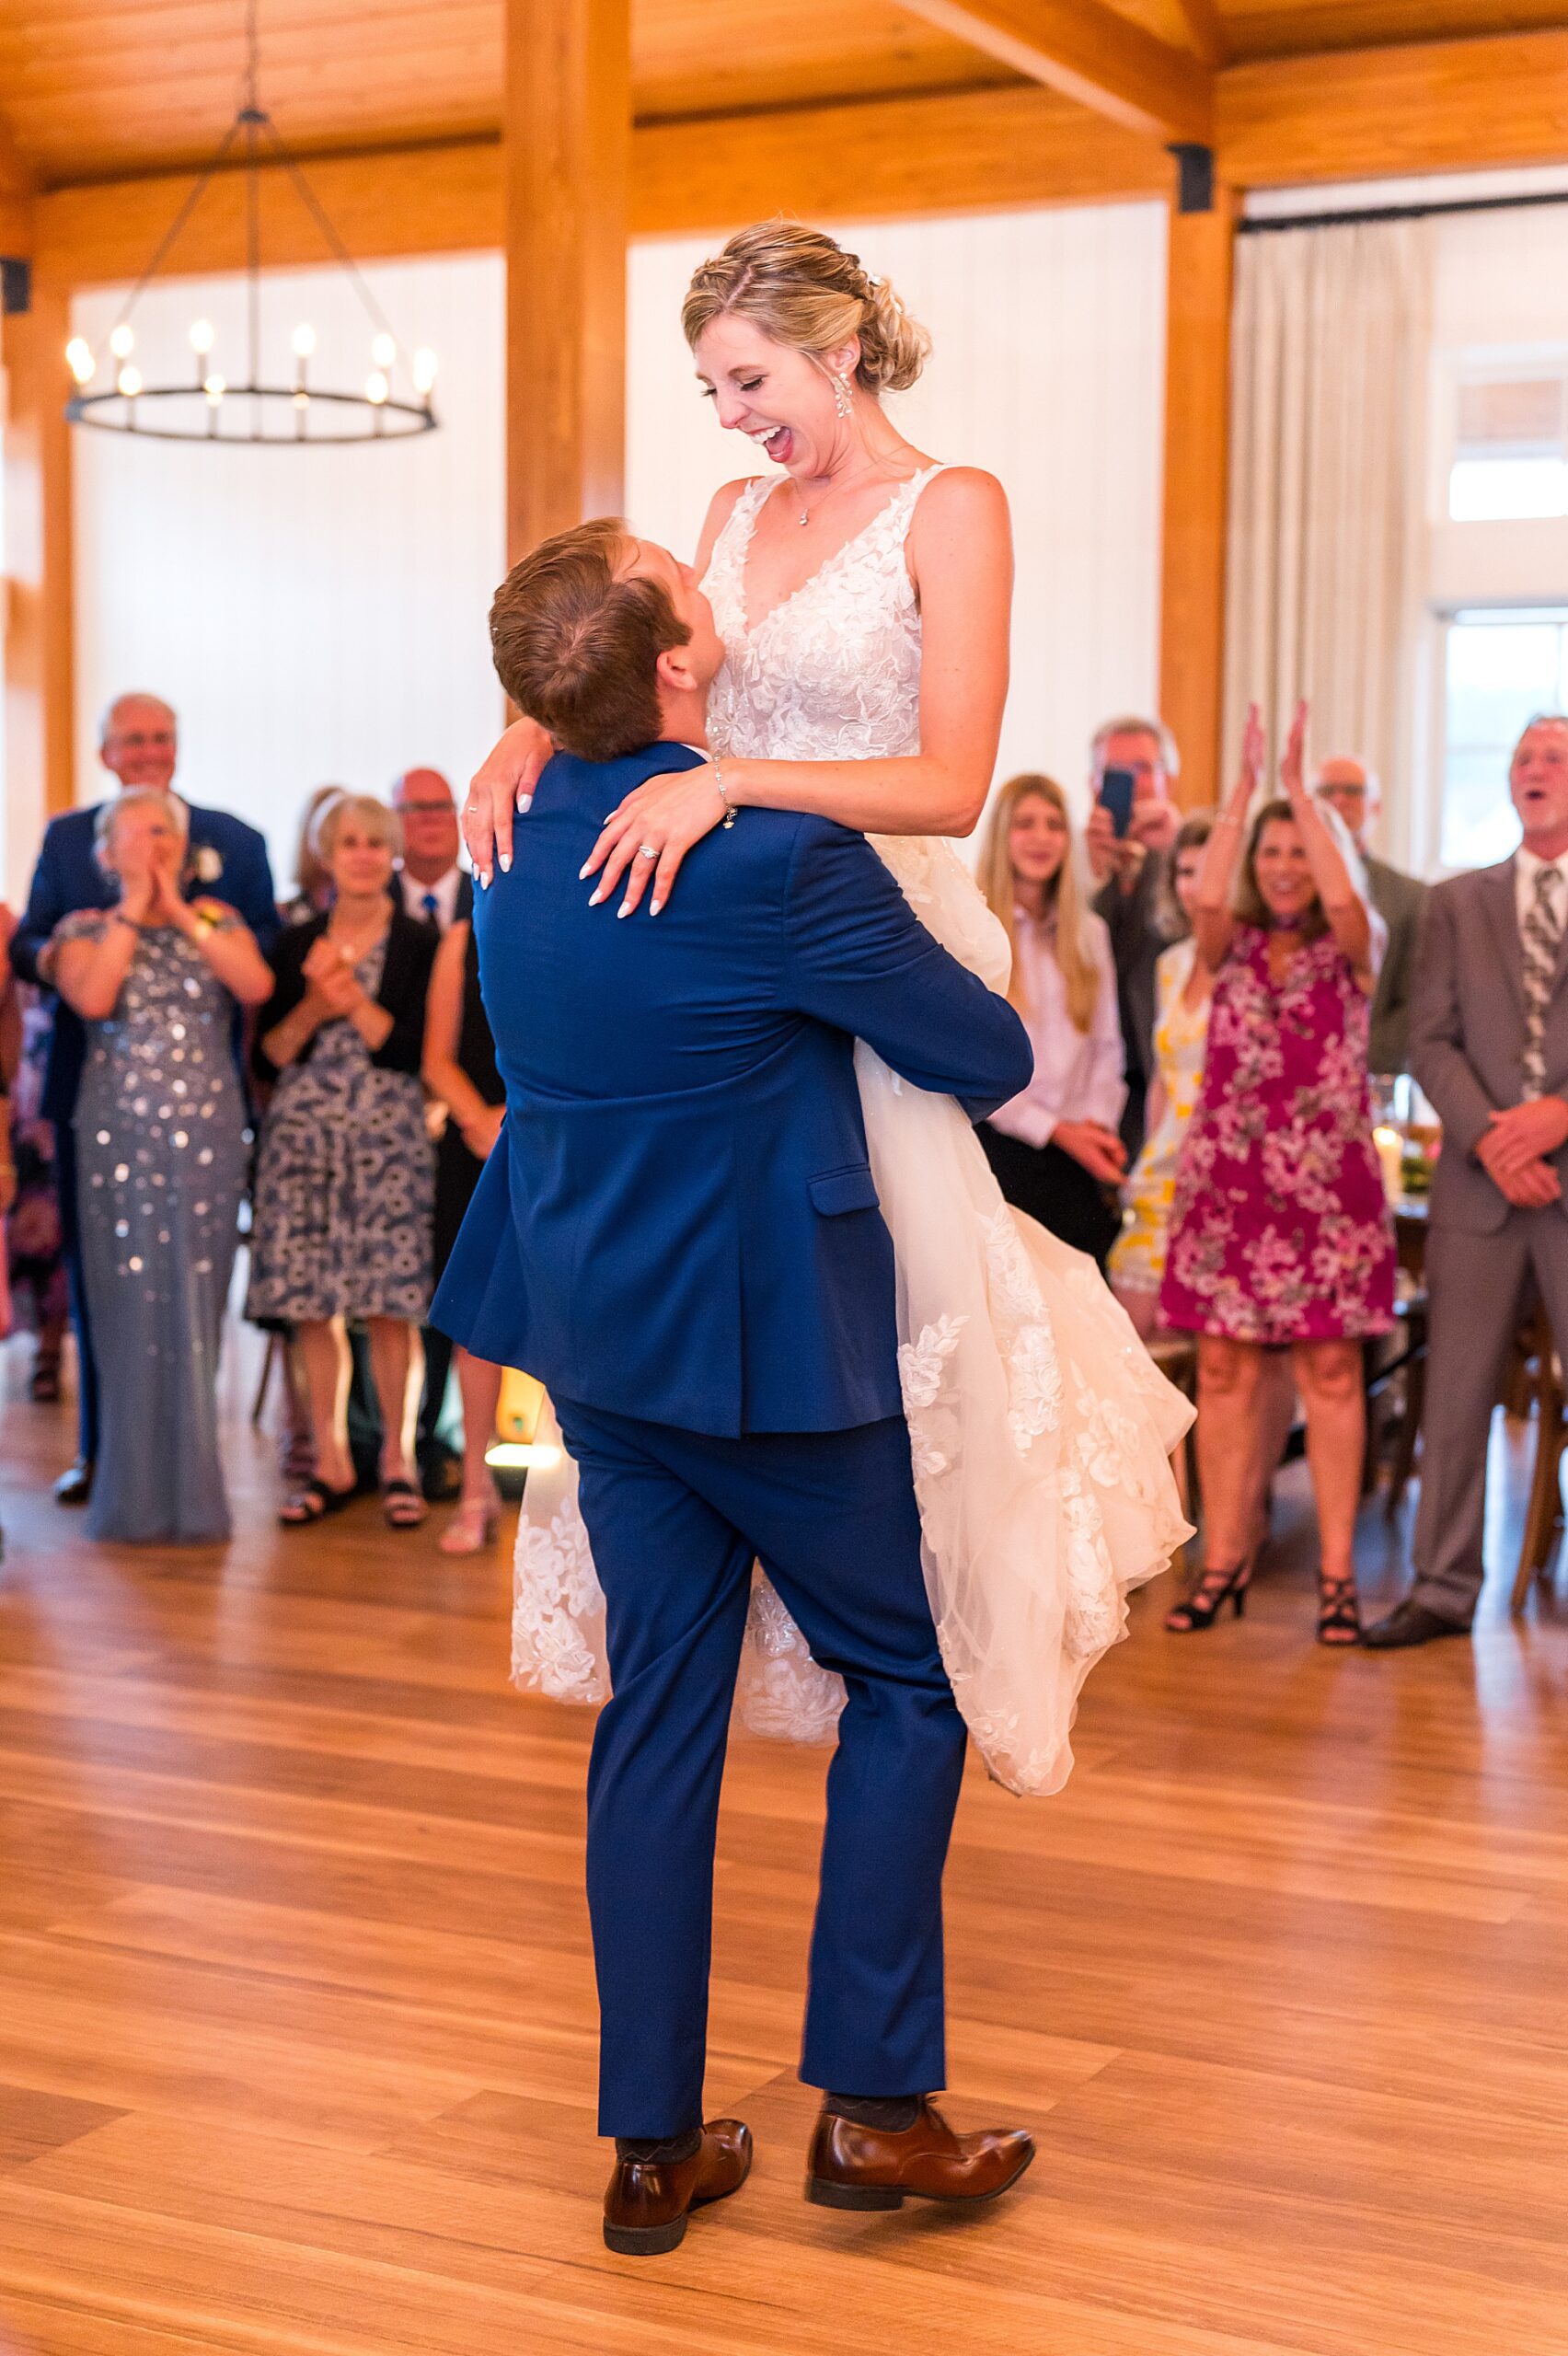 groom lifts bride up on the dance floor